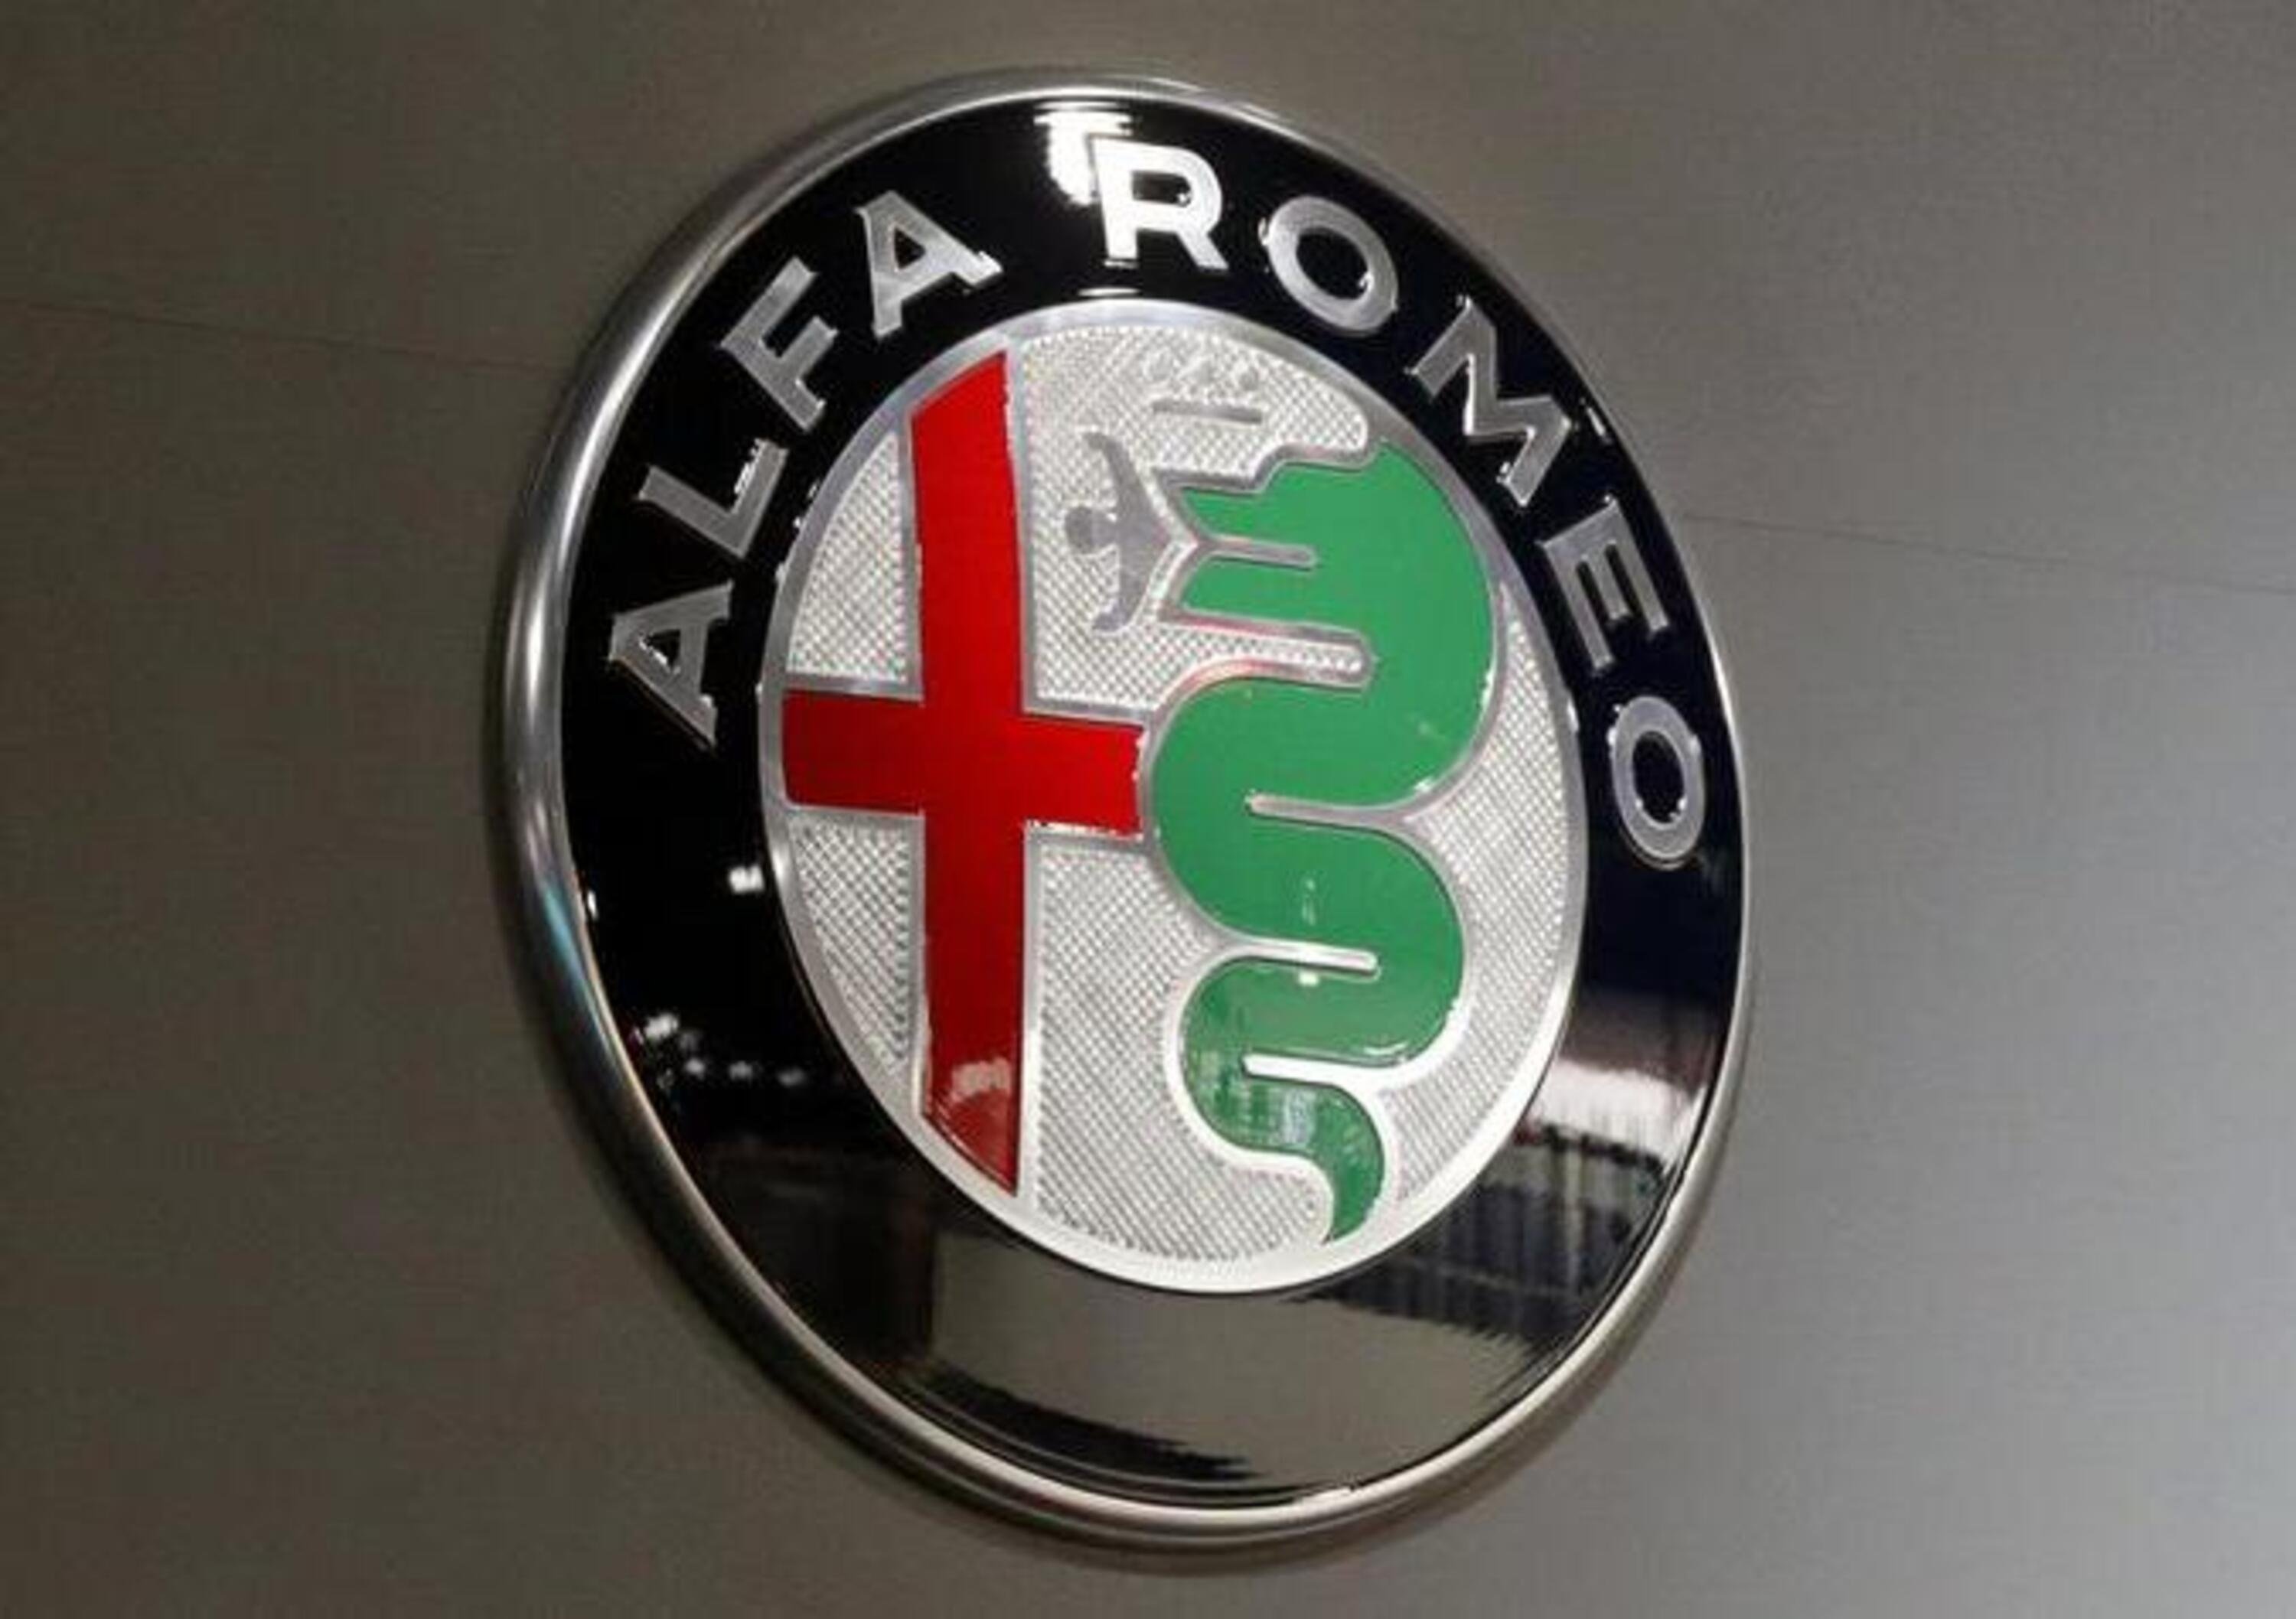 Alfa Romeo, due giorni di cassa integrazione a Cassino a novembre